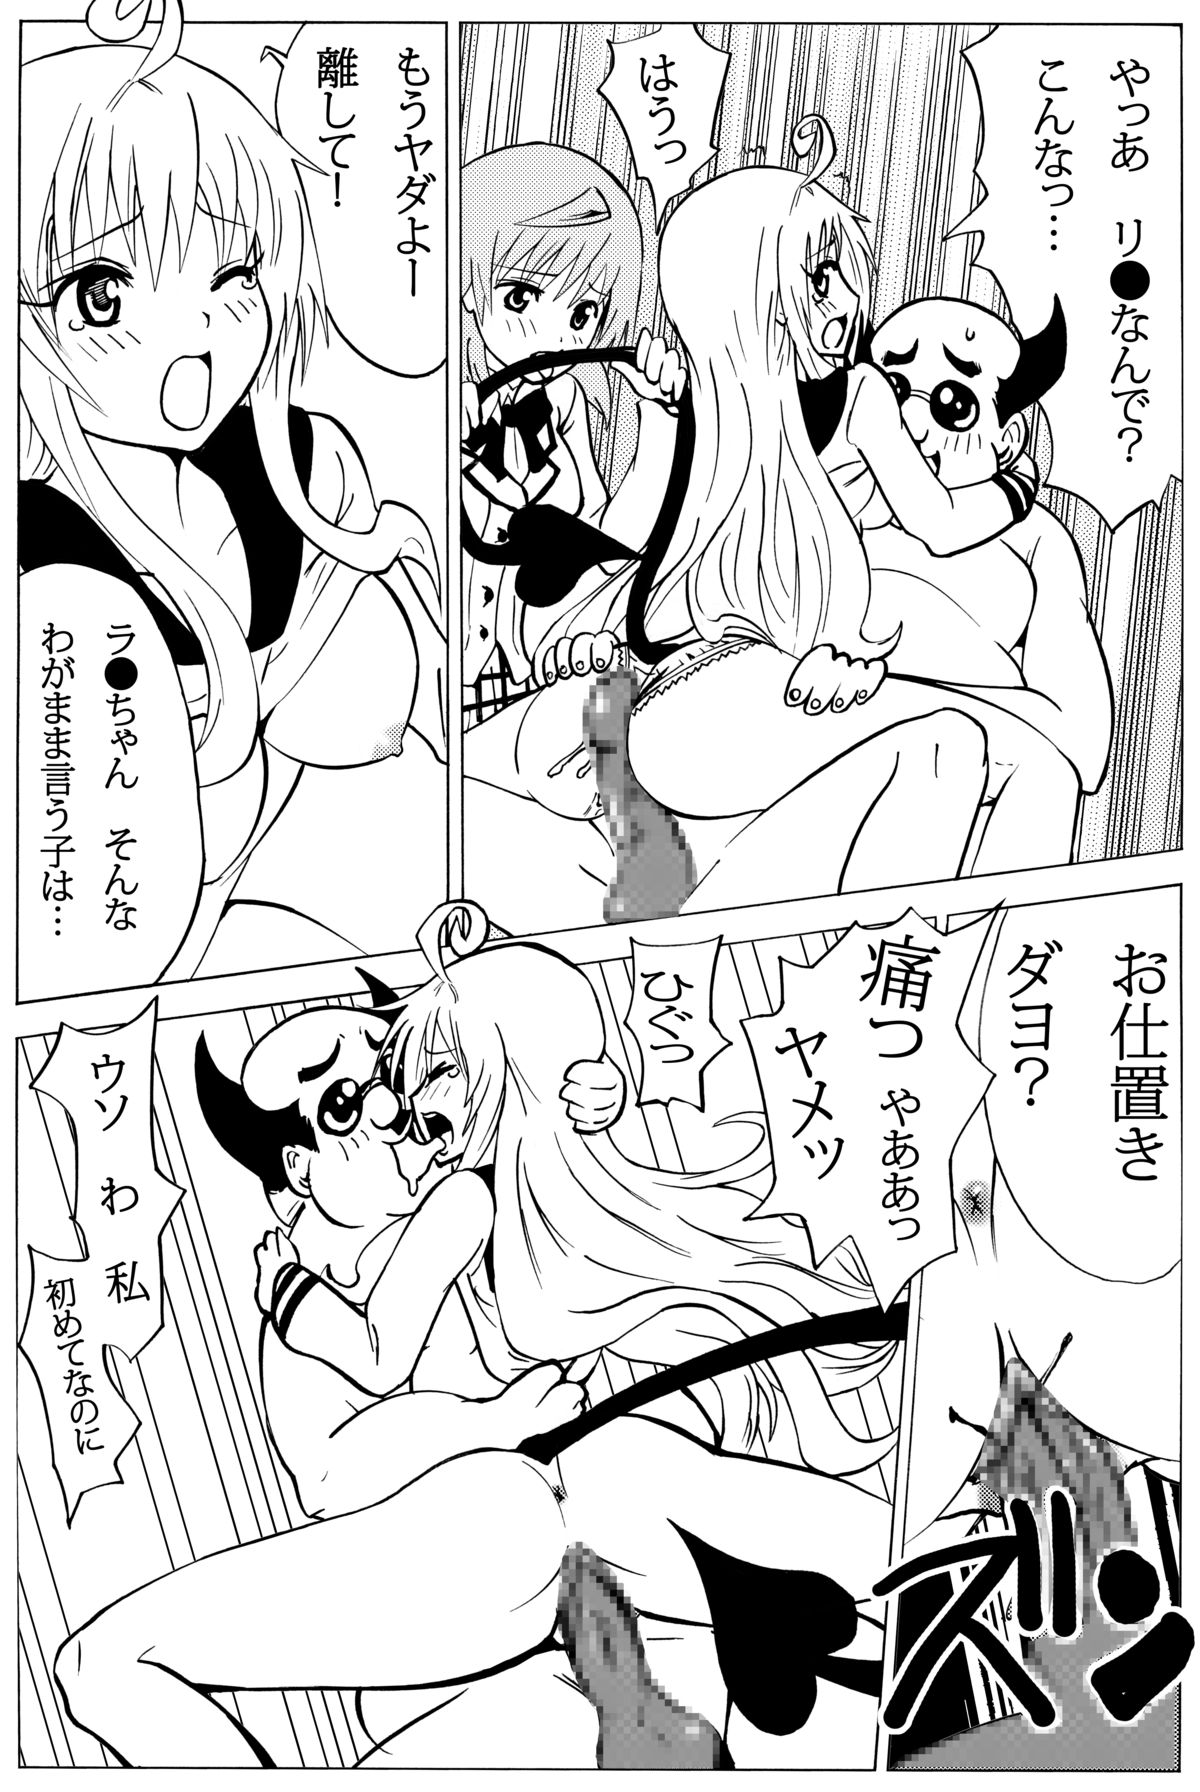 [oni puni] chiisana oshiri ni buchikonde! (ToLOVEru-trouble-) [DL version] page 8 full